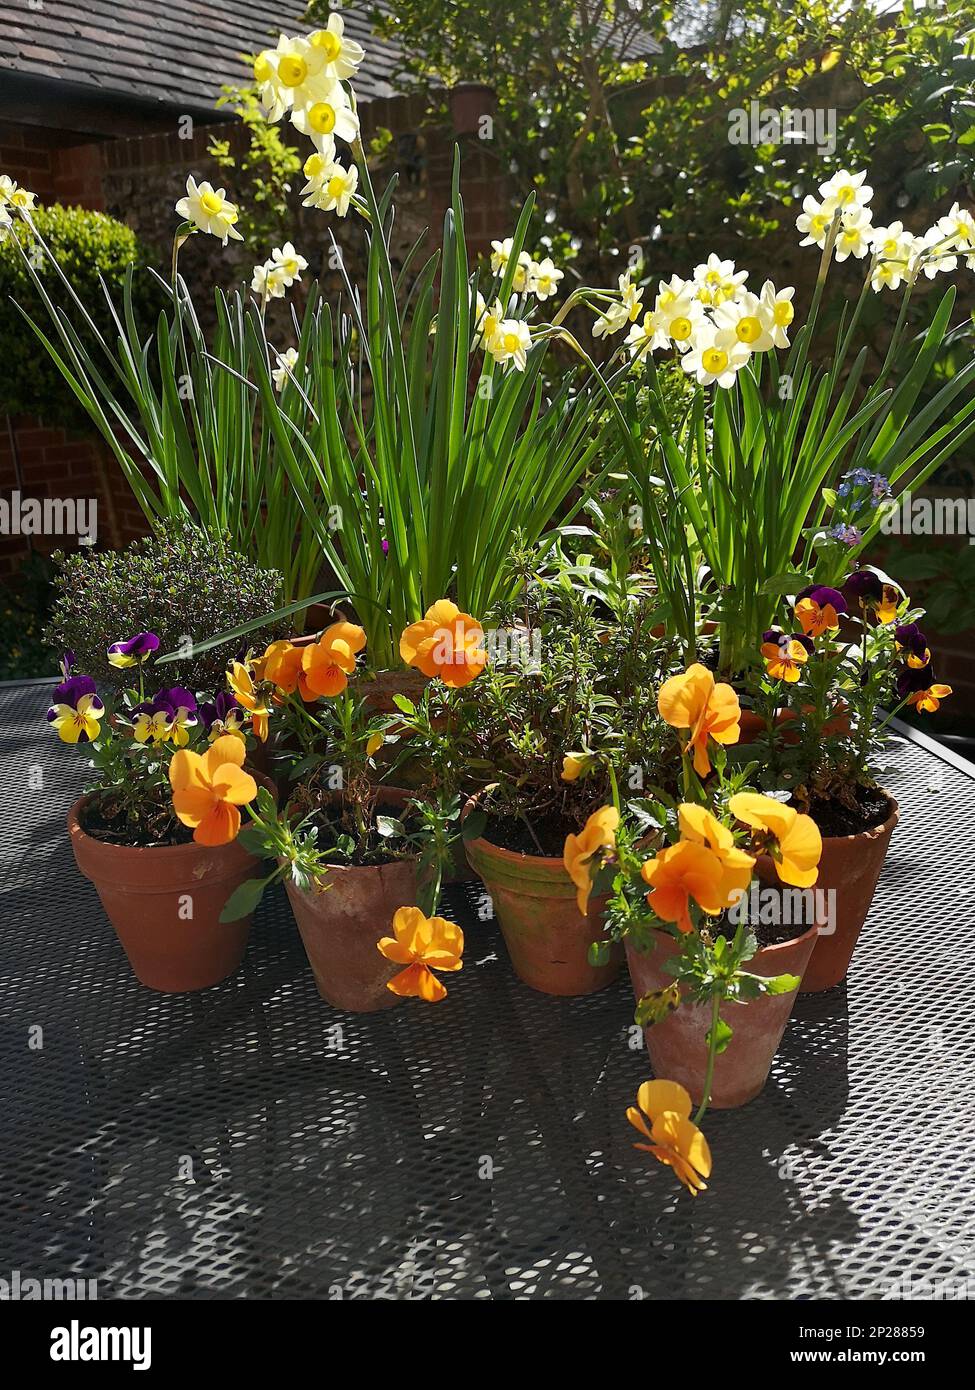 Une exposition de pansies et de jonquilles orange dans des pots en terre cuite. Banque D'Images